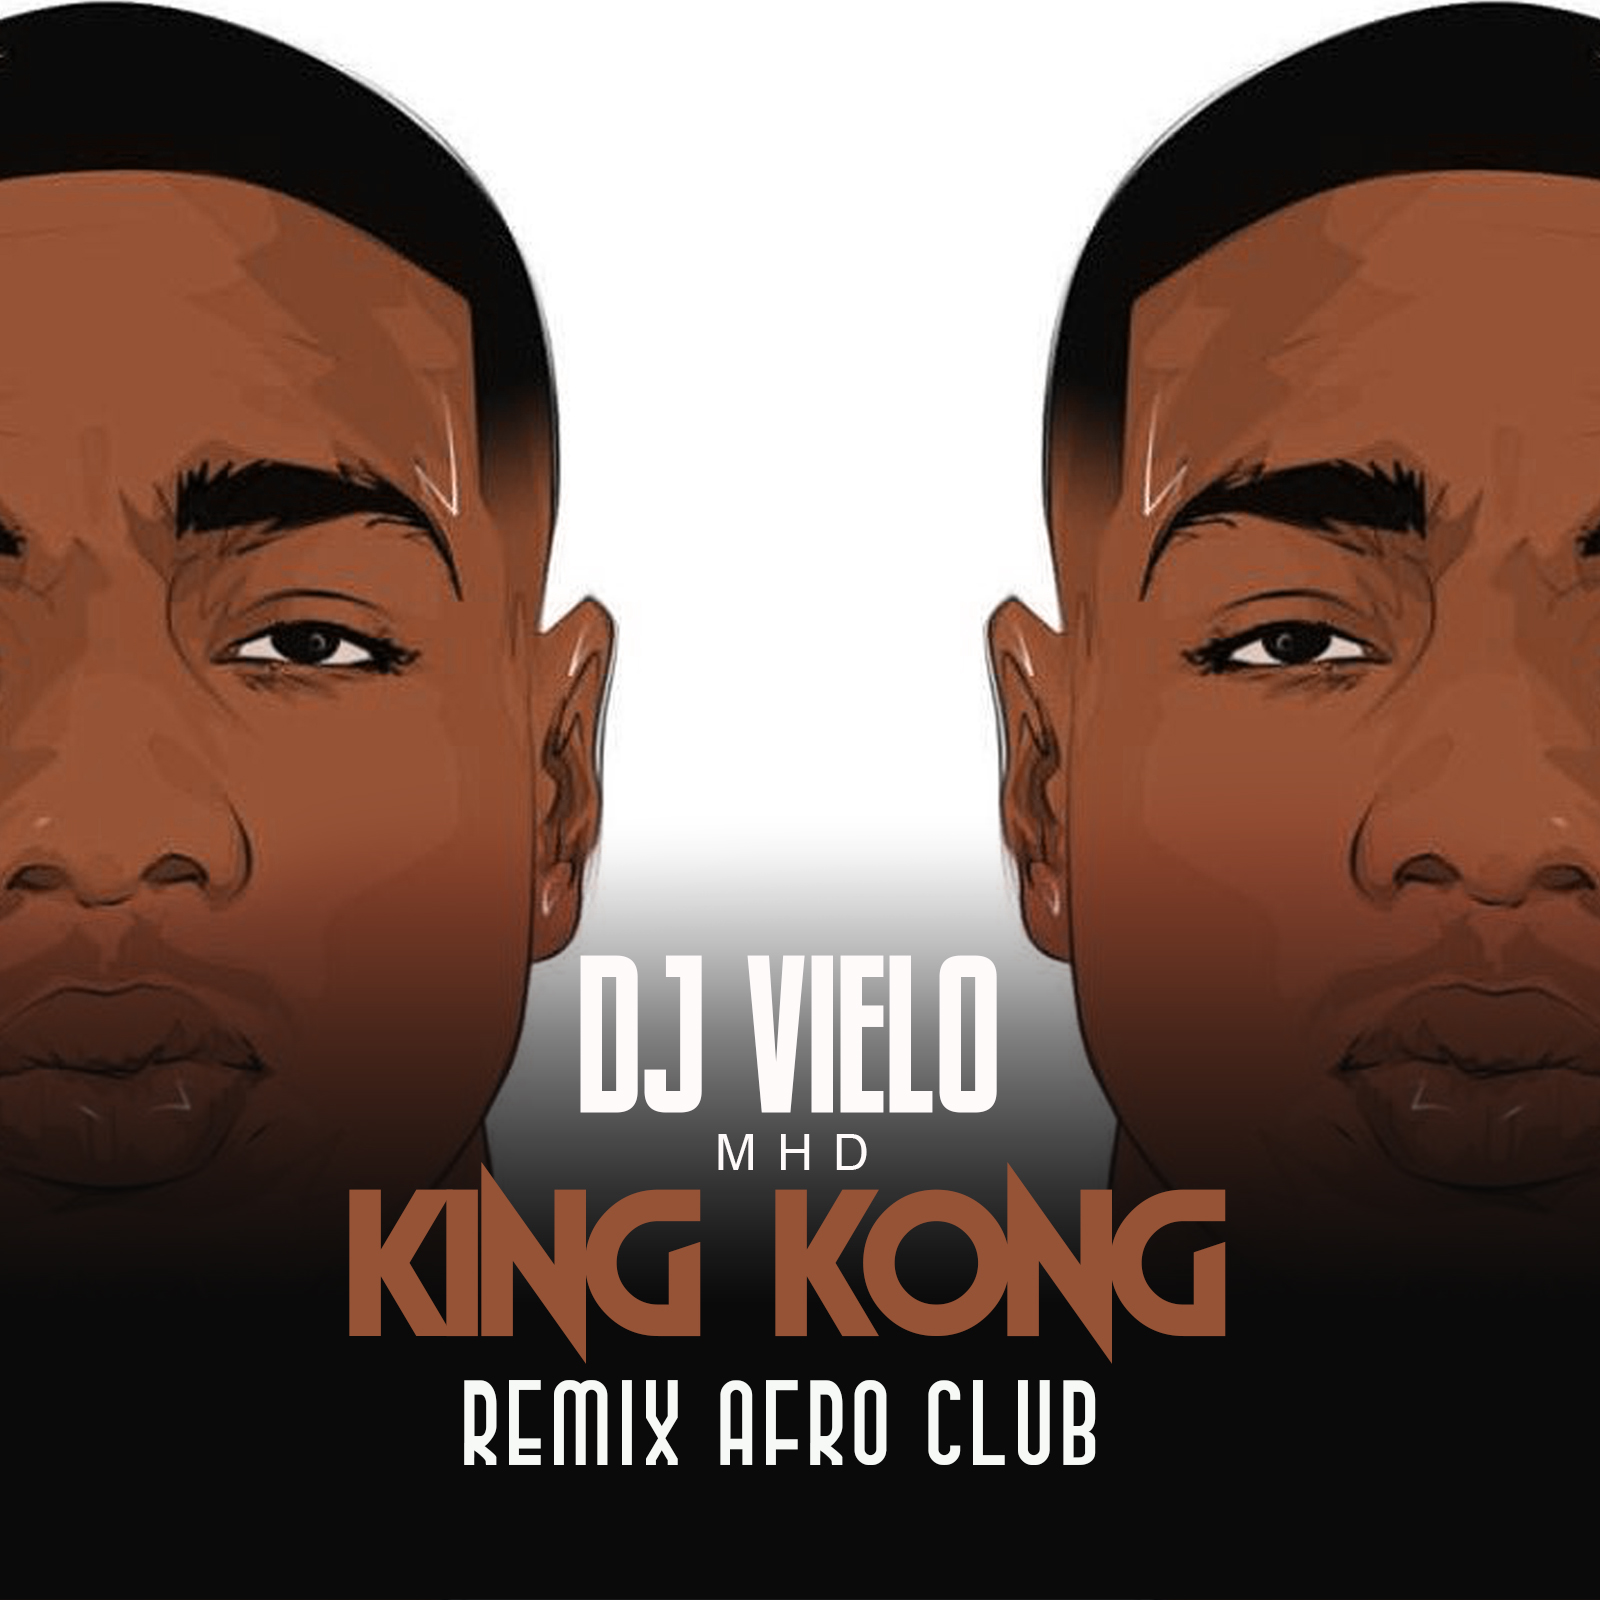 Stažení Dj Vielo X MHD - AFRO TRAP Part.11 (King Kong) Remix Afro Club DISPO SUR SPOTIFY, DEEZER, ITUNES